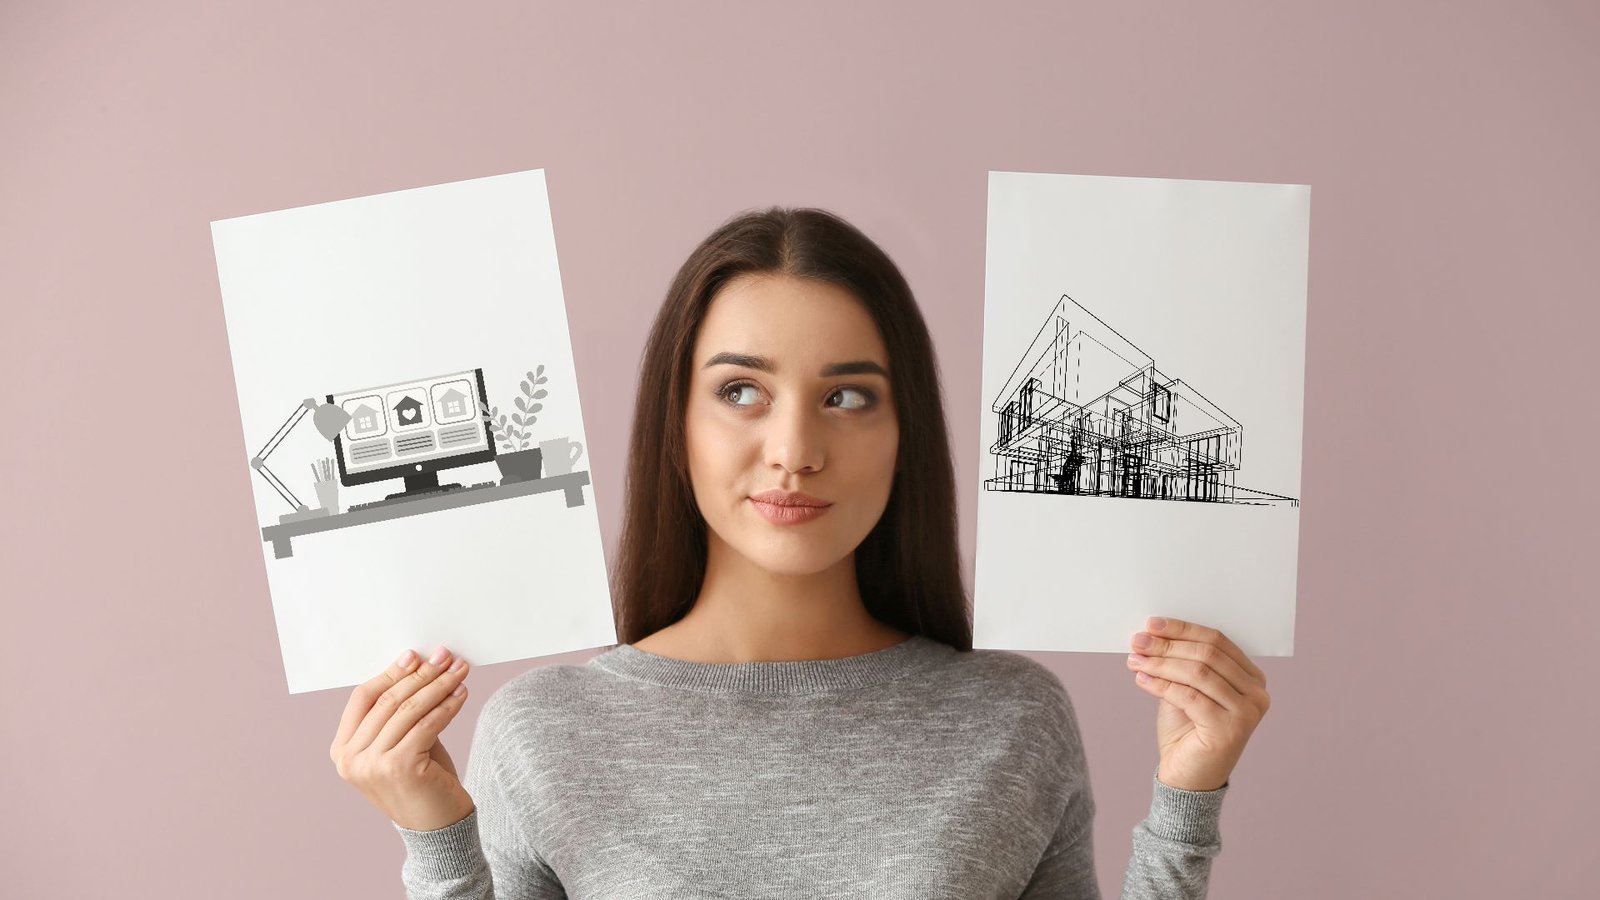 Une femme tenant deux dessins d'une maison en construction et d'un site d'annonces immobilières, illustrant les options possibles pour construire ou acheter une maison en Loire-Atlantique.